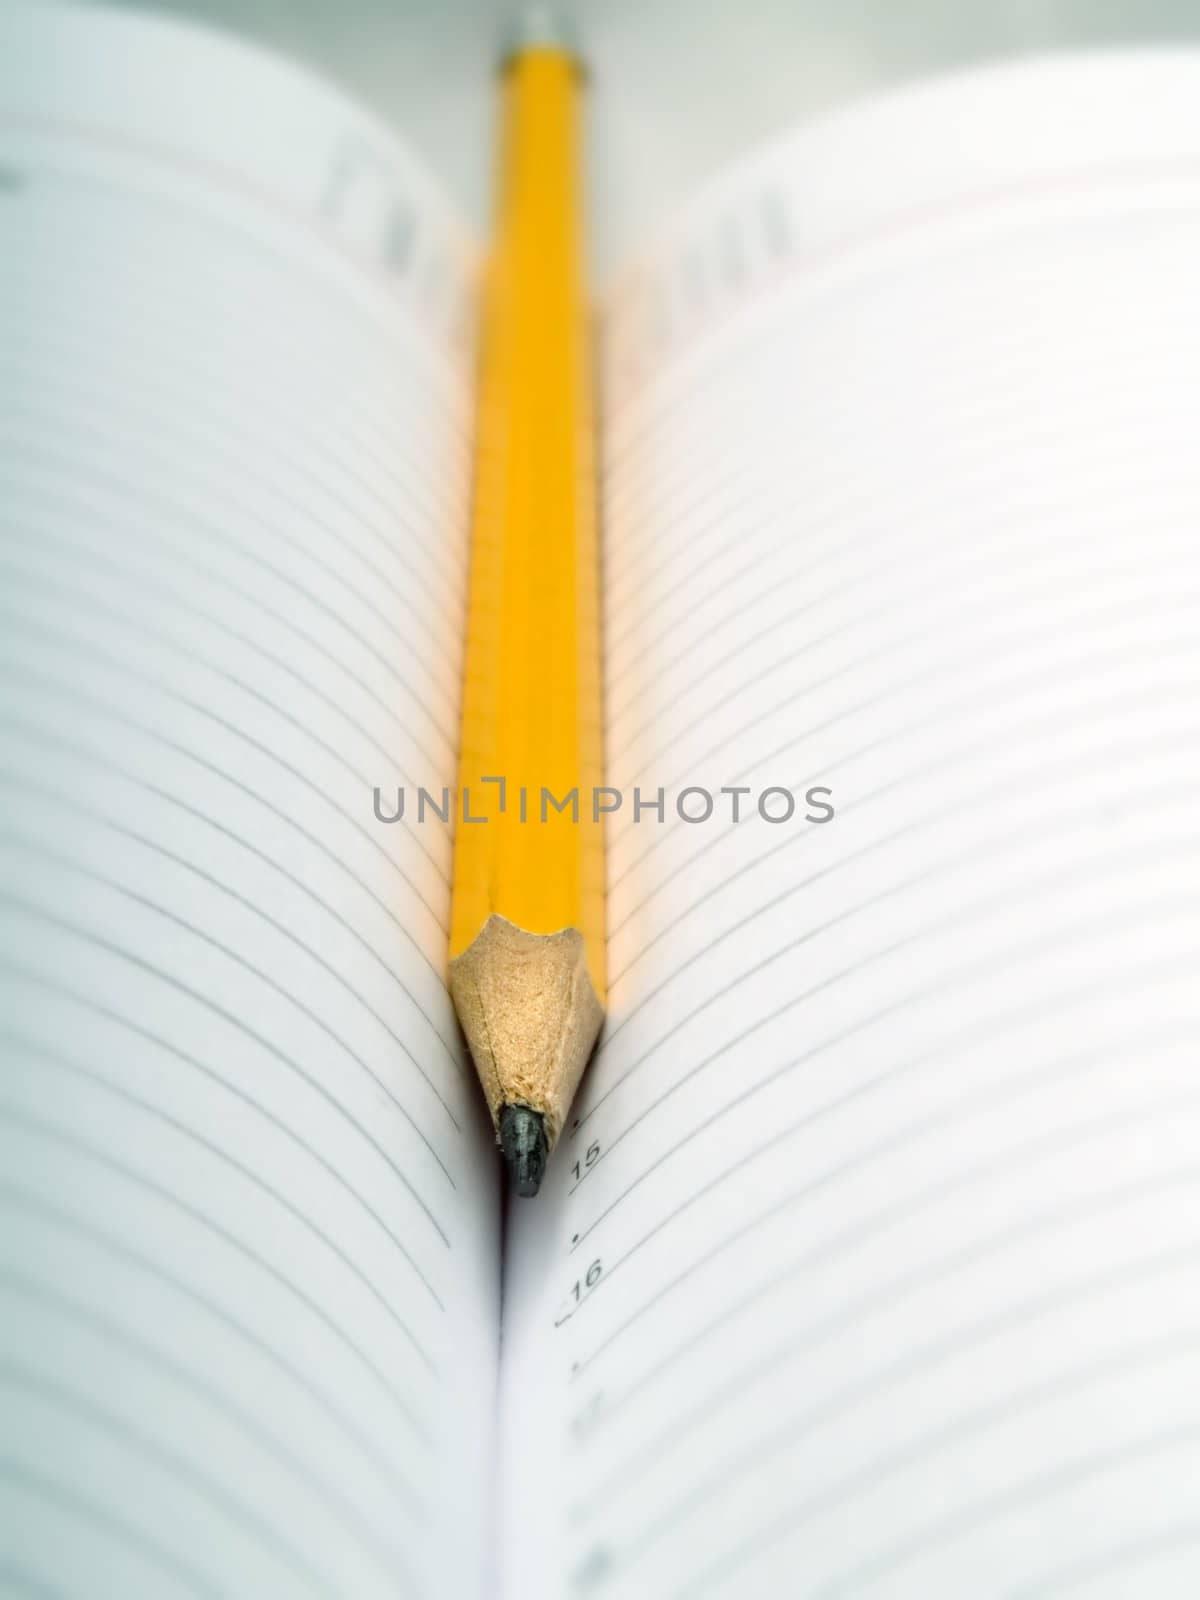 Pencil and organizer by henrischmit